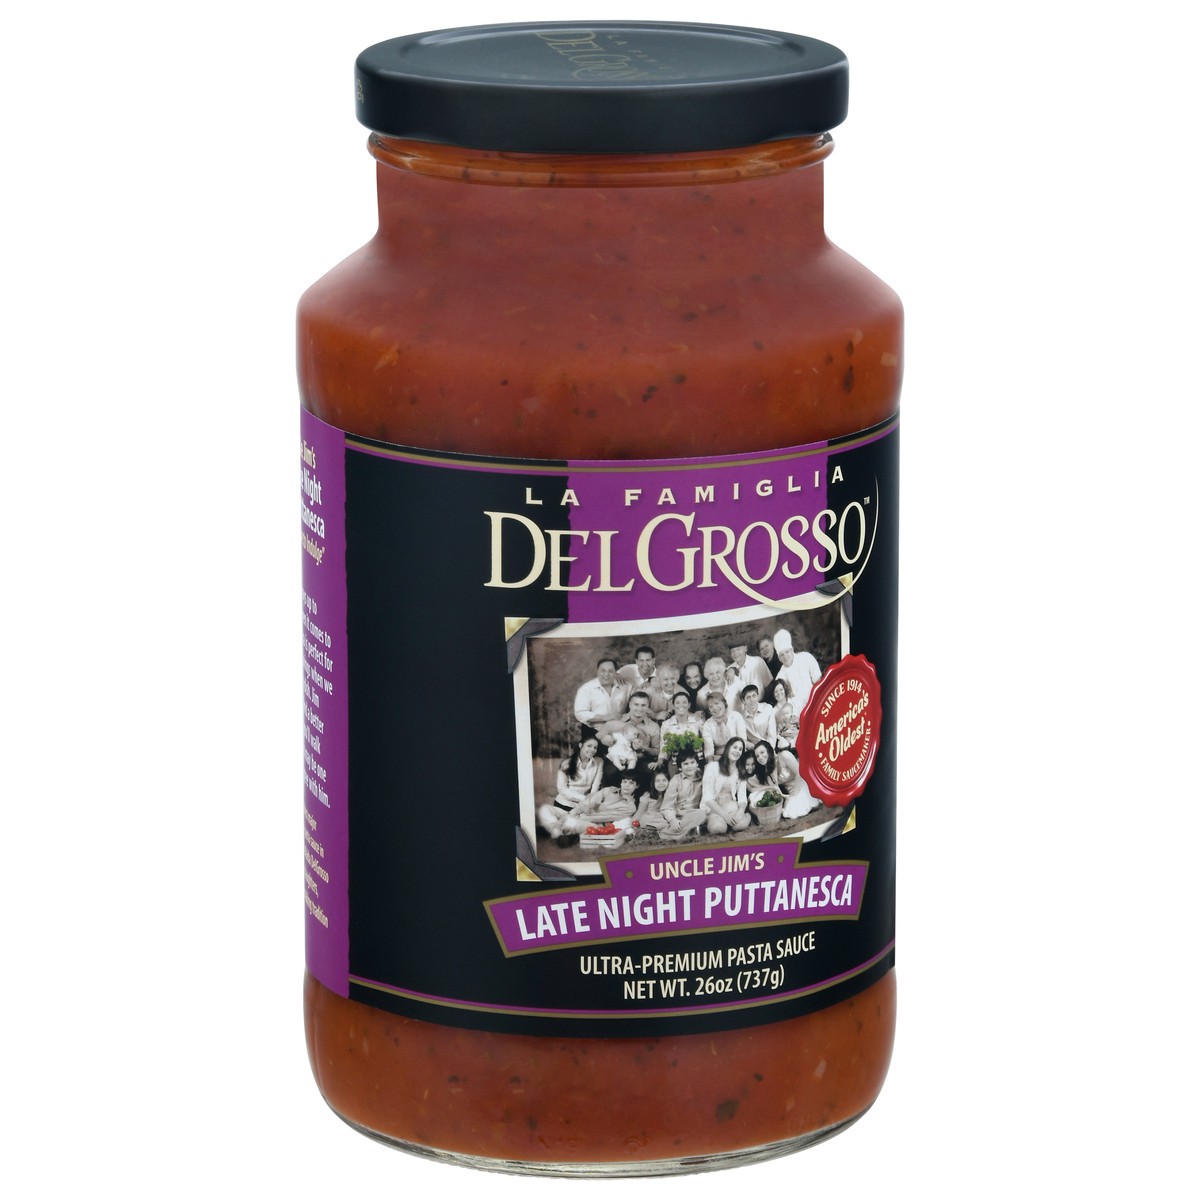 slide 8 of 11, DelGrosso Uncle Jim's Late Night Puttanesca Ultra-Premium Pasta Sauce 26 oz, 26 oz